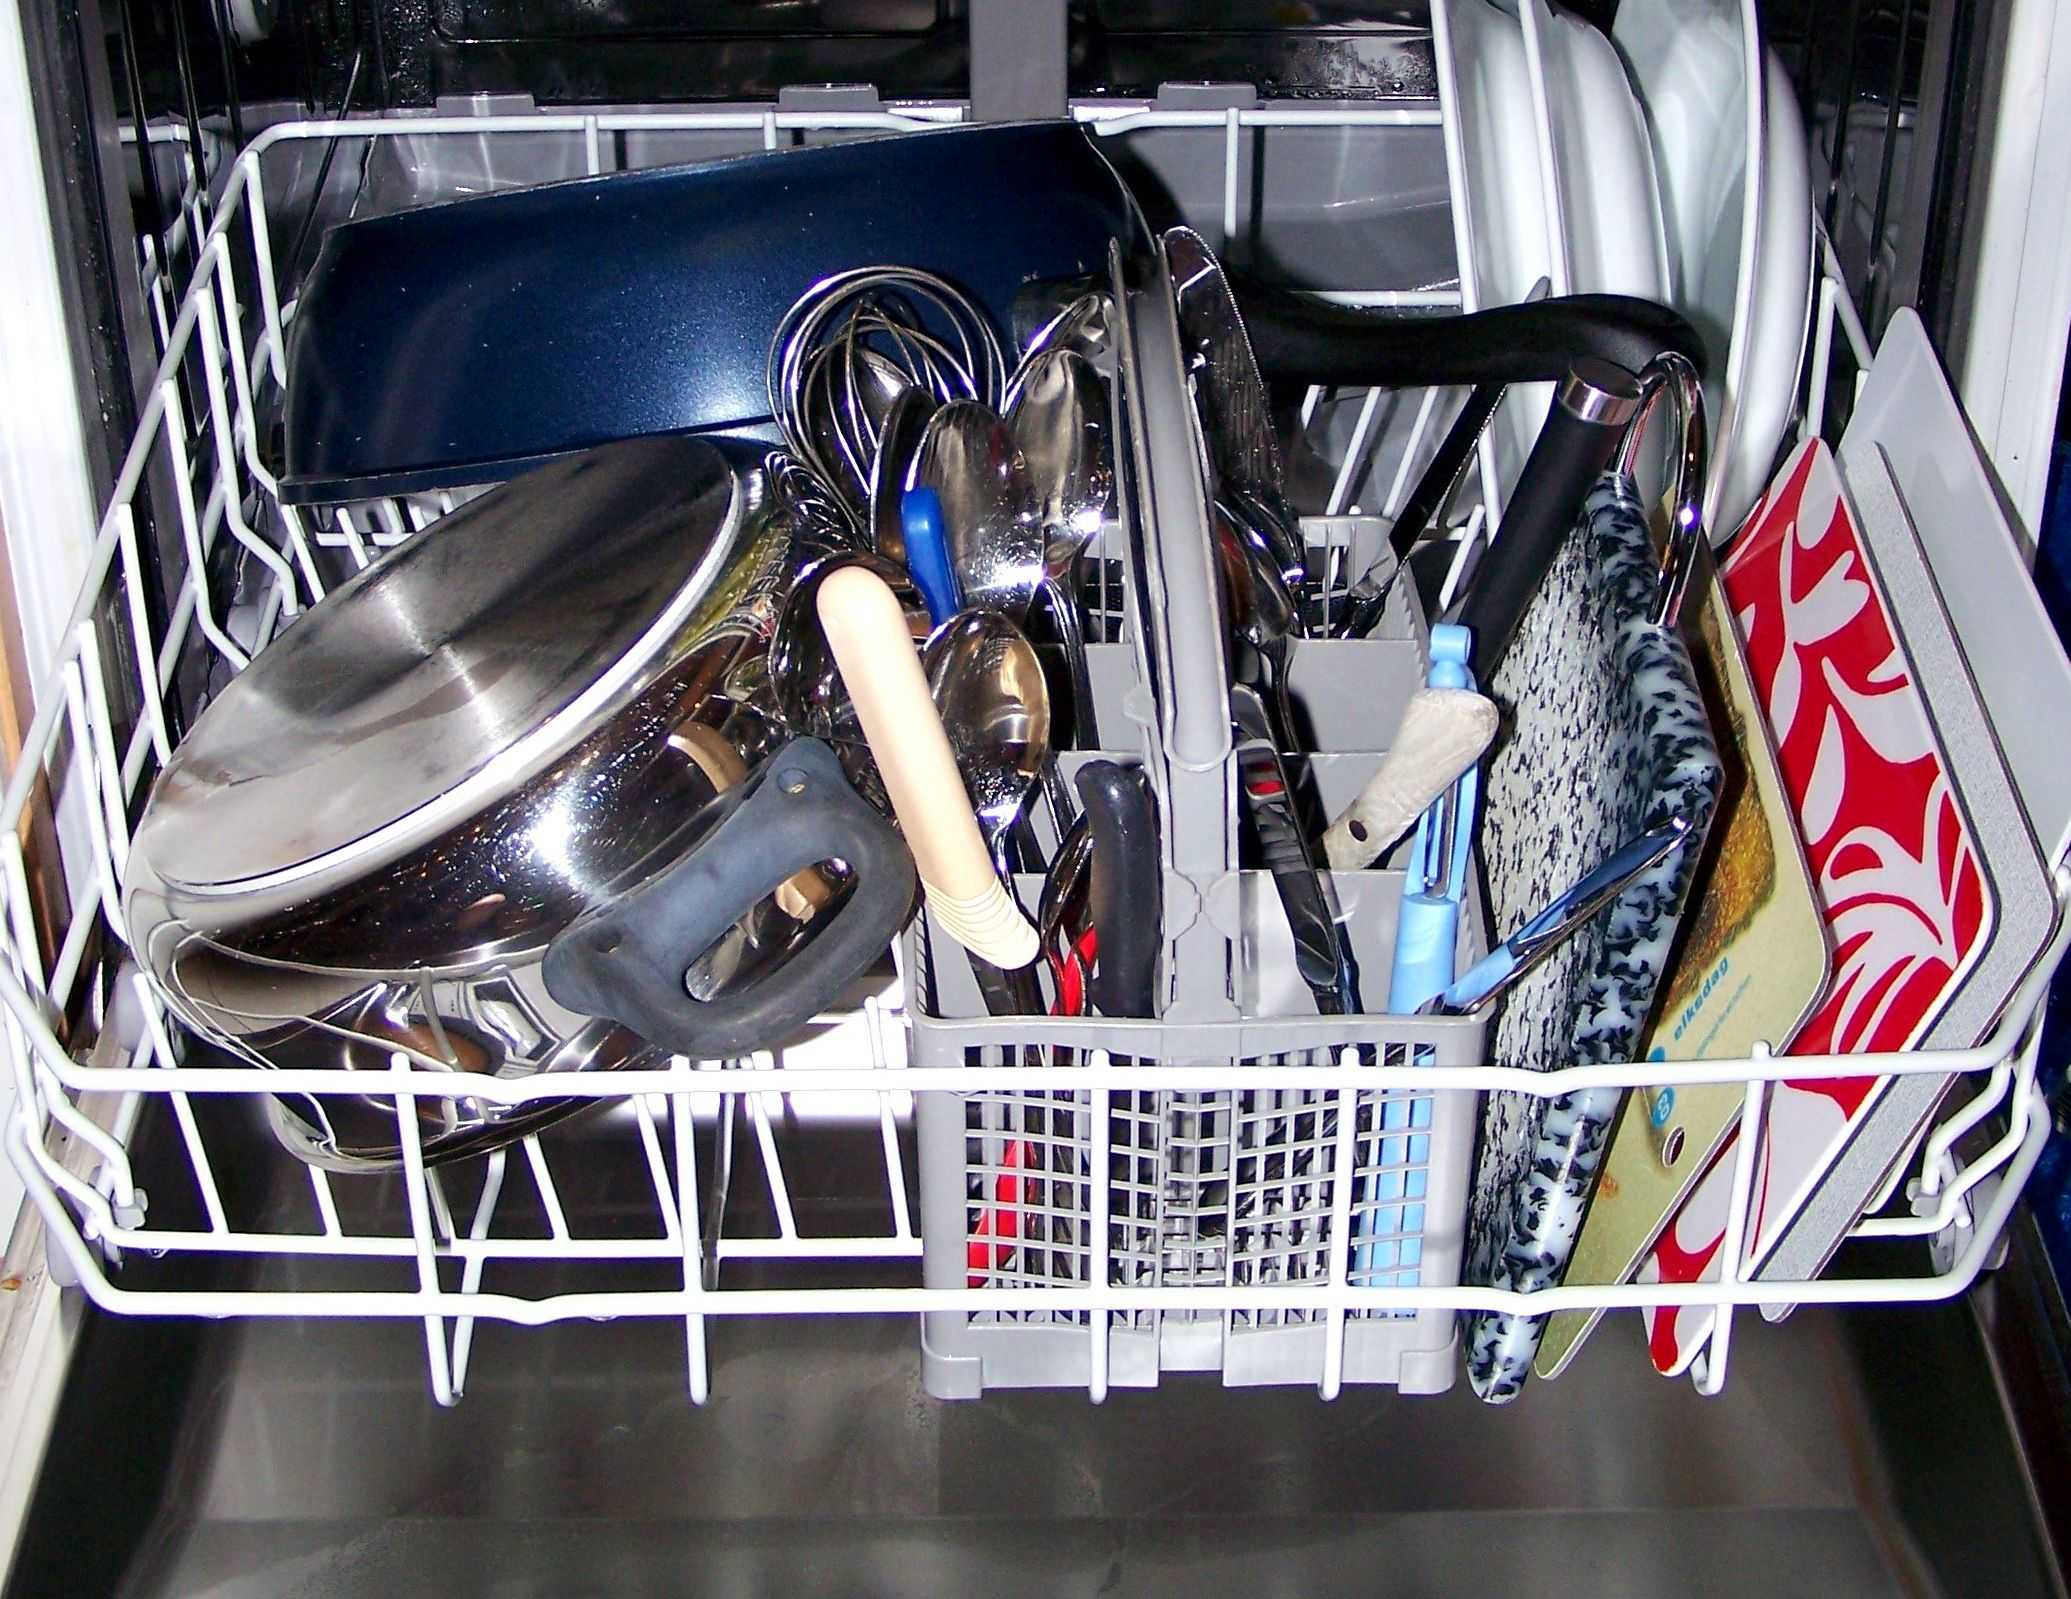 Правила эксплуатации посудомоечной машины: все нюансы и рекомендации